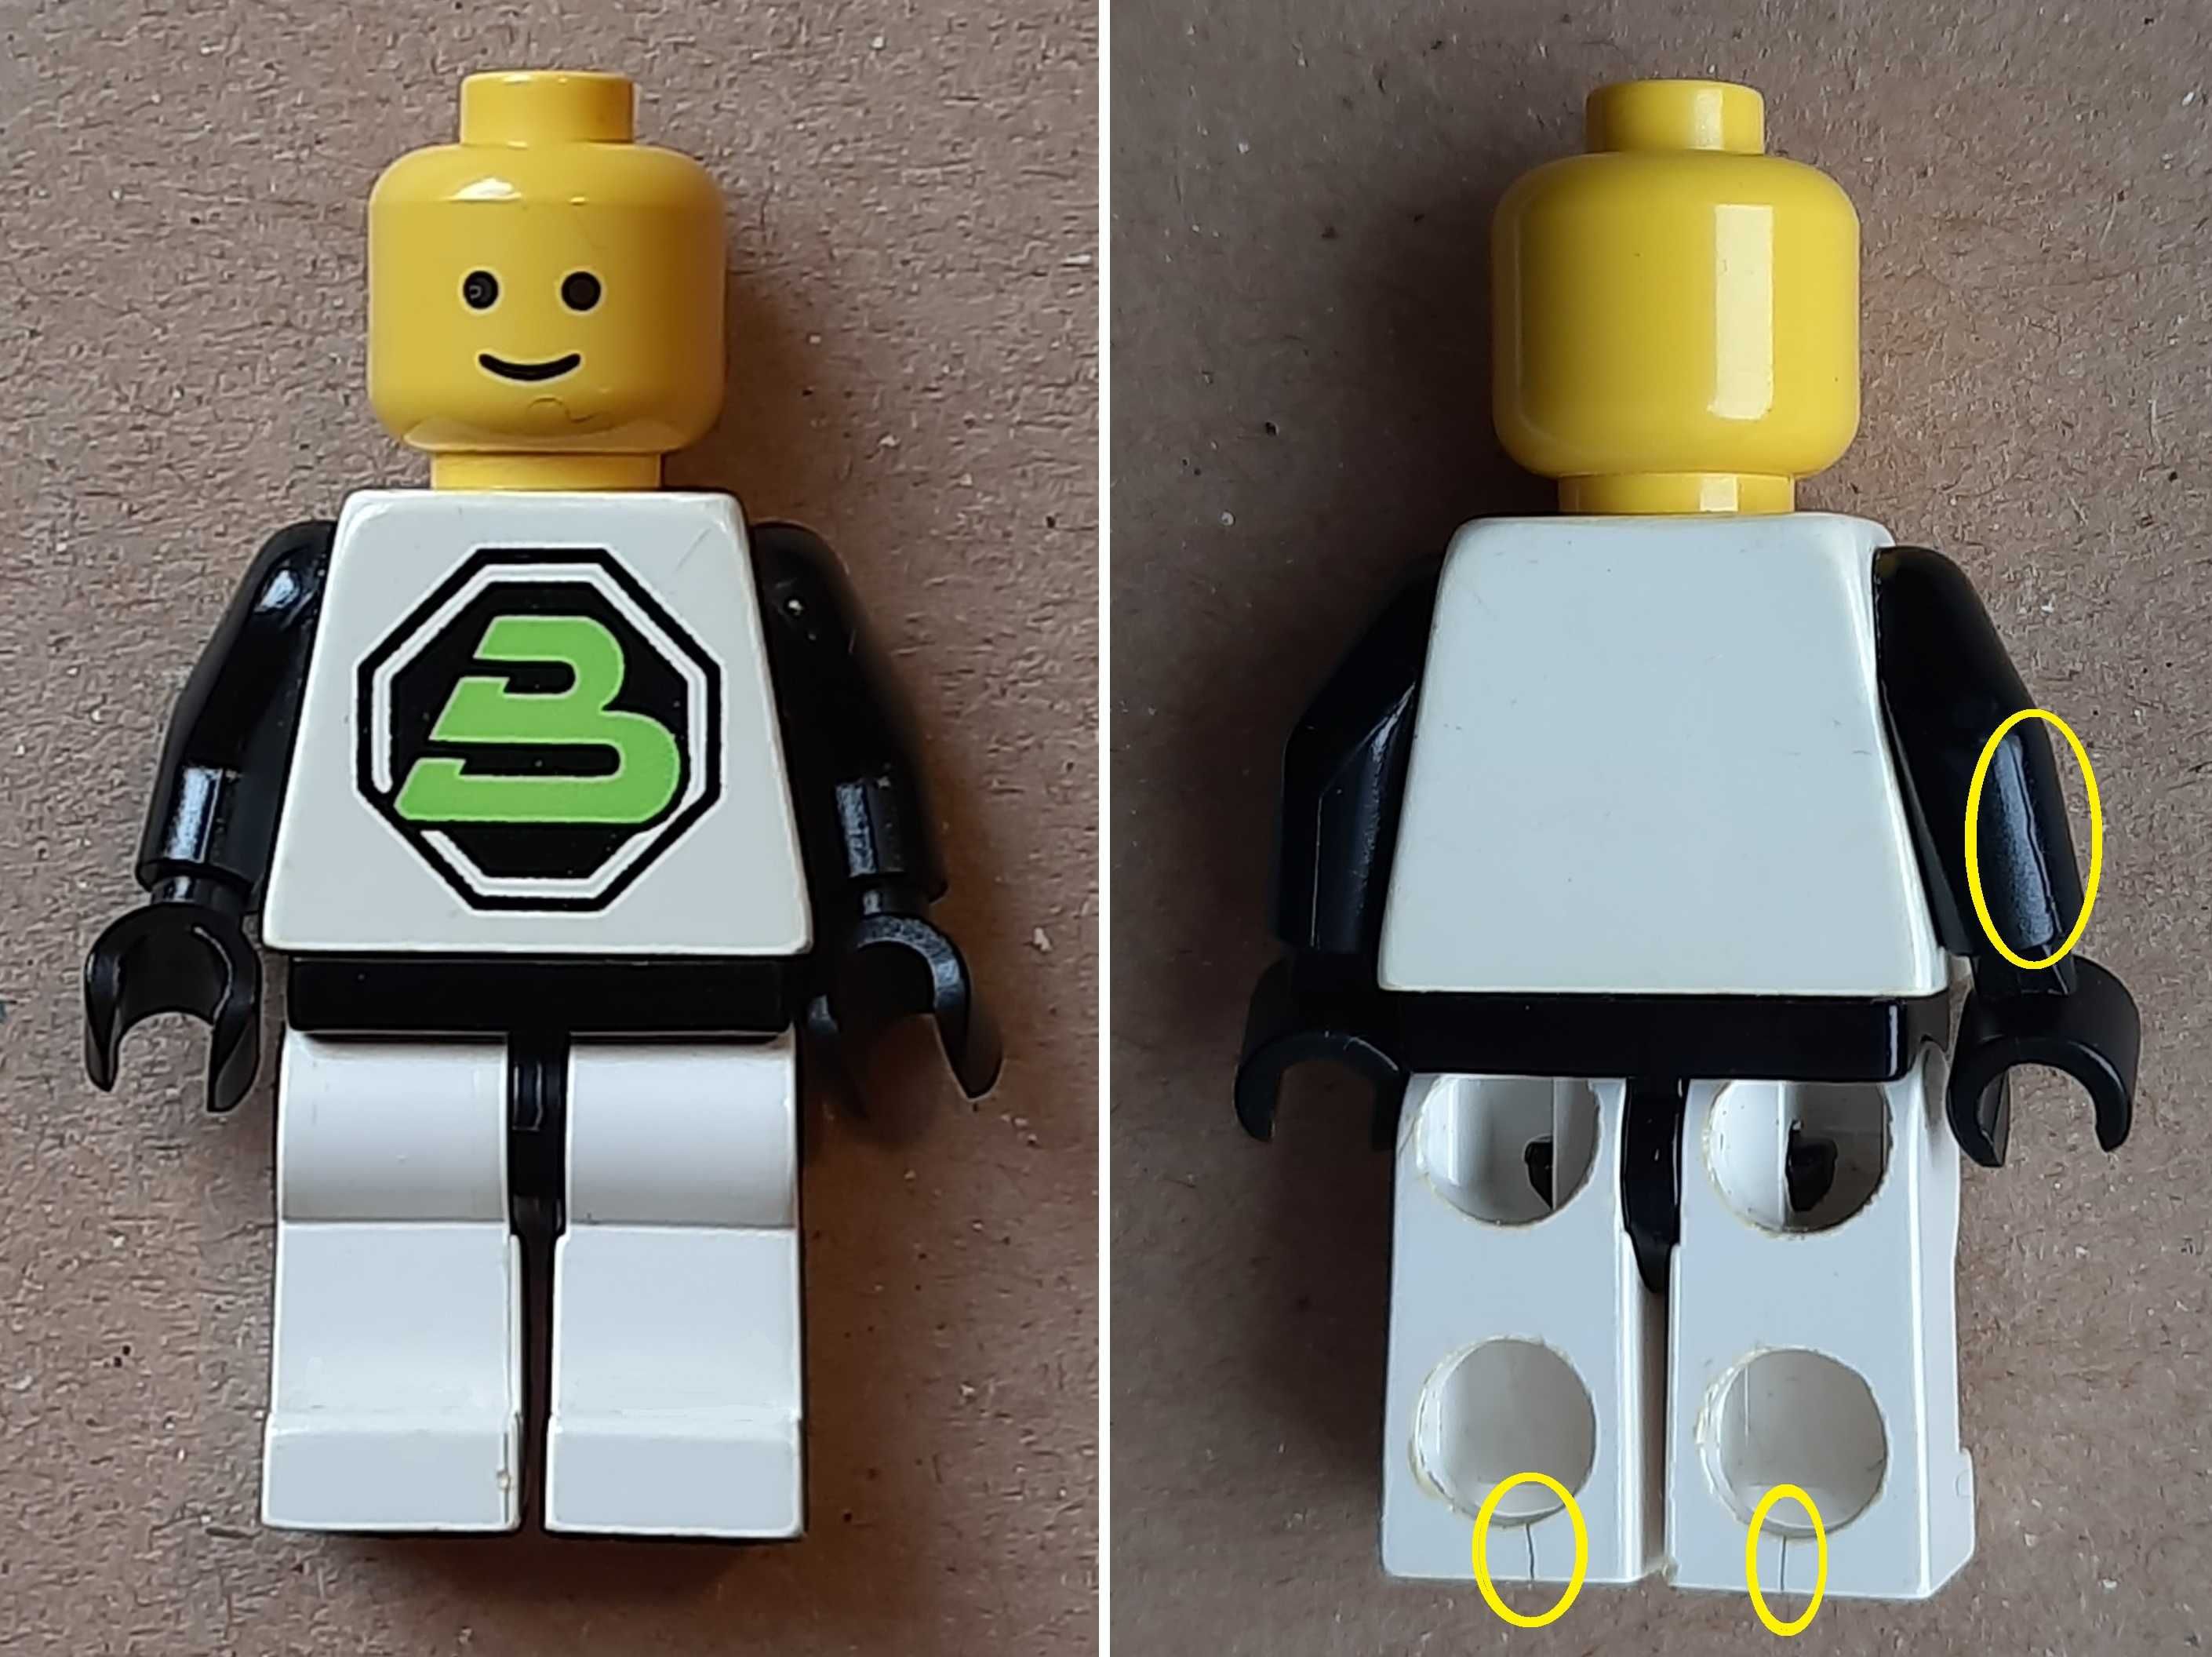 LEGO 6812 Grid Trekkor z instrukcją i pudełkiem